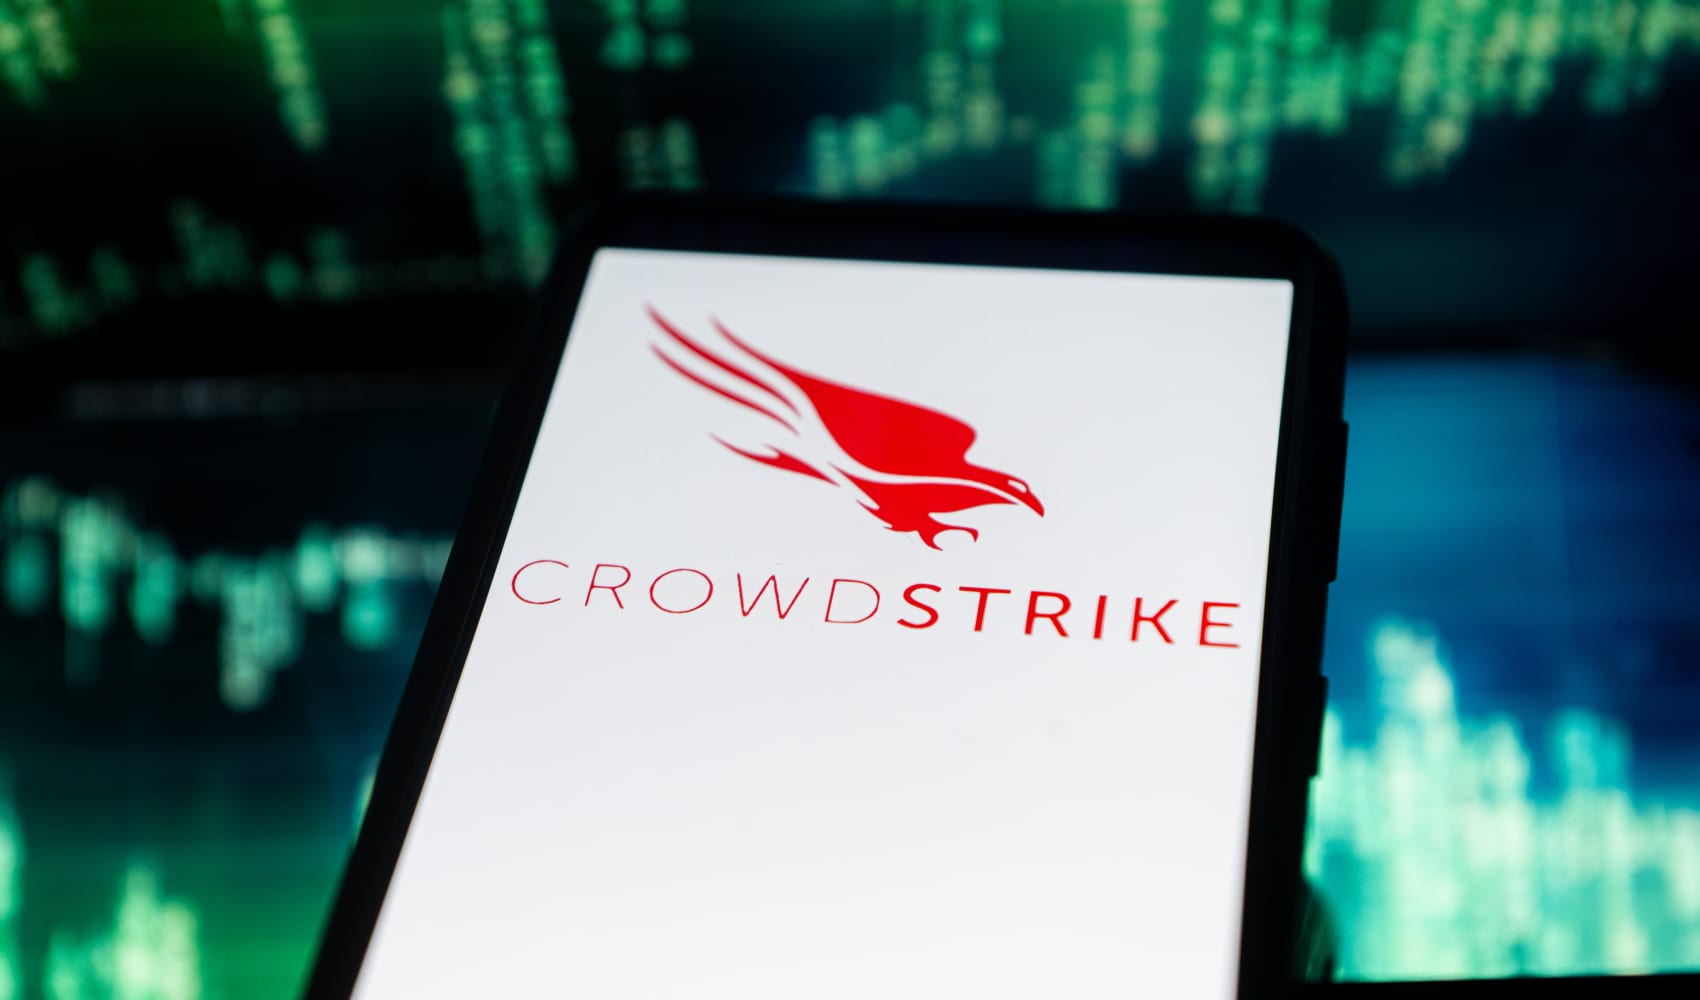 What is Crowdstrike?